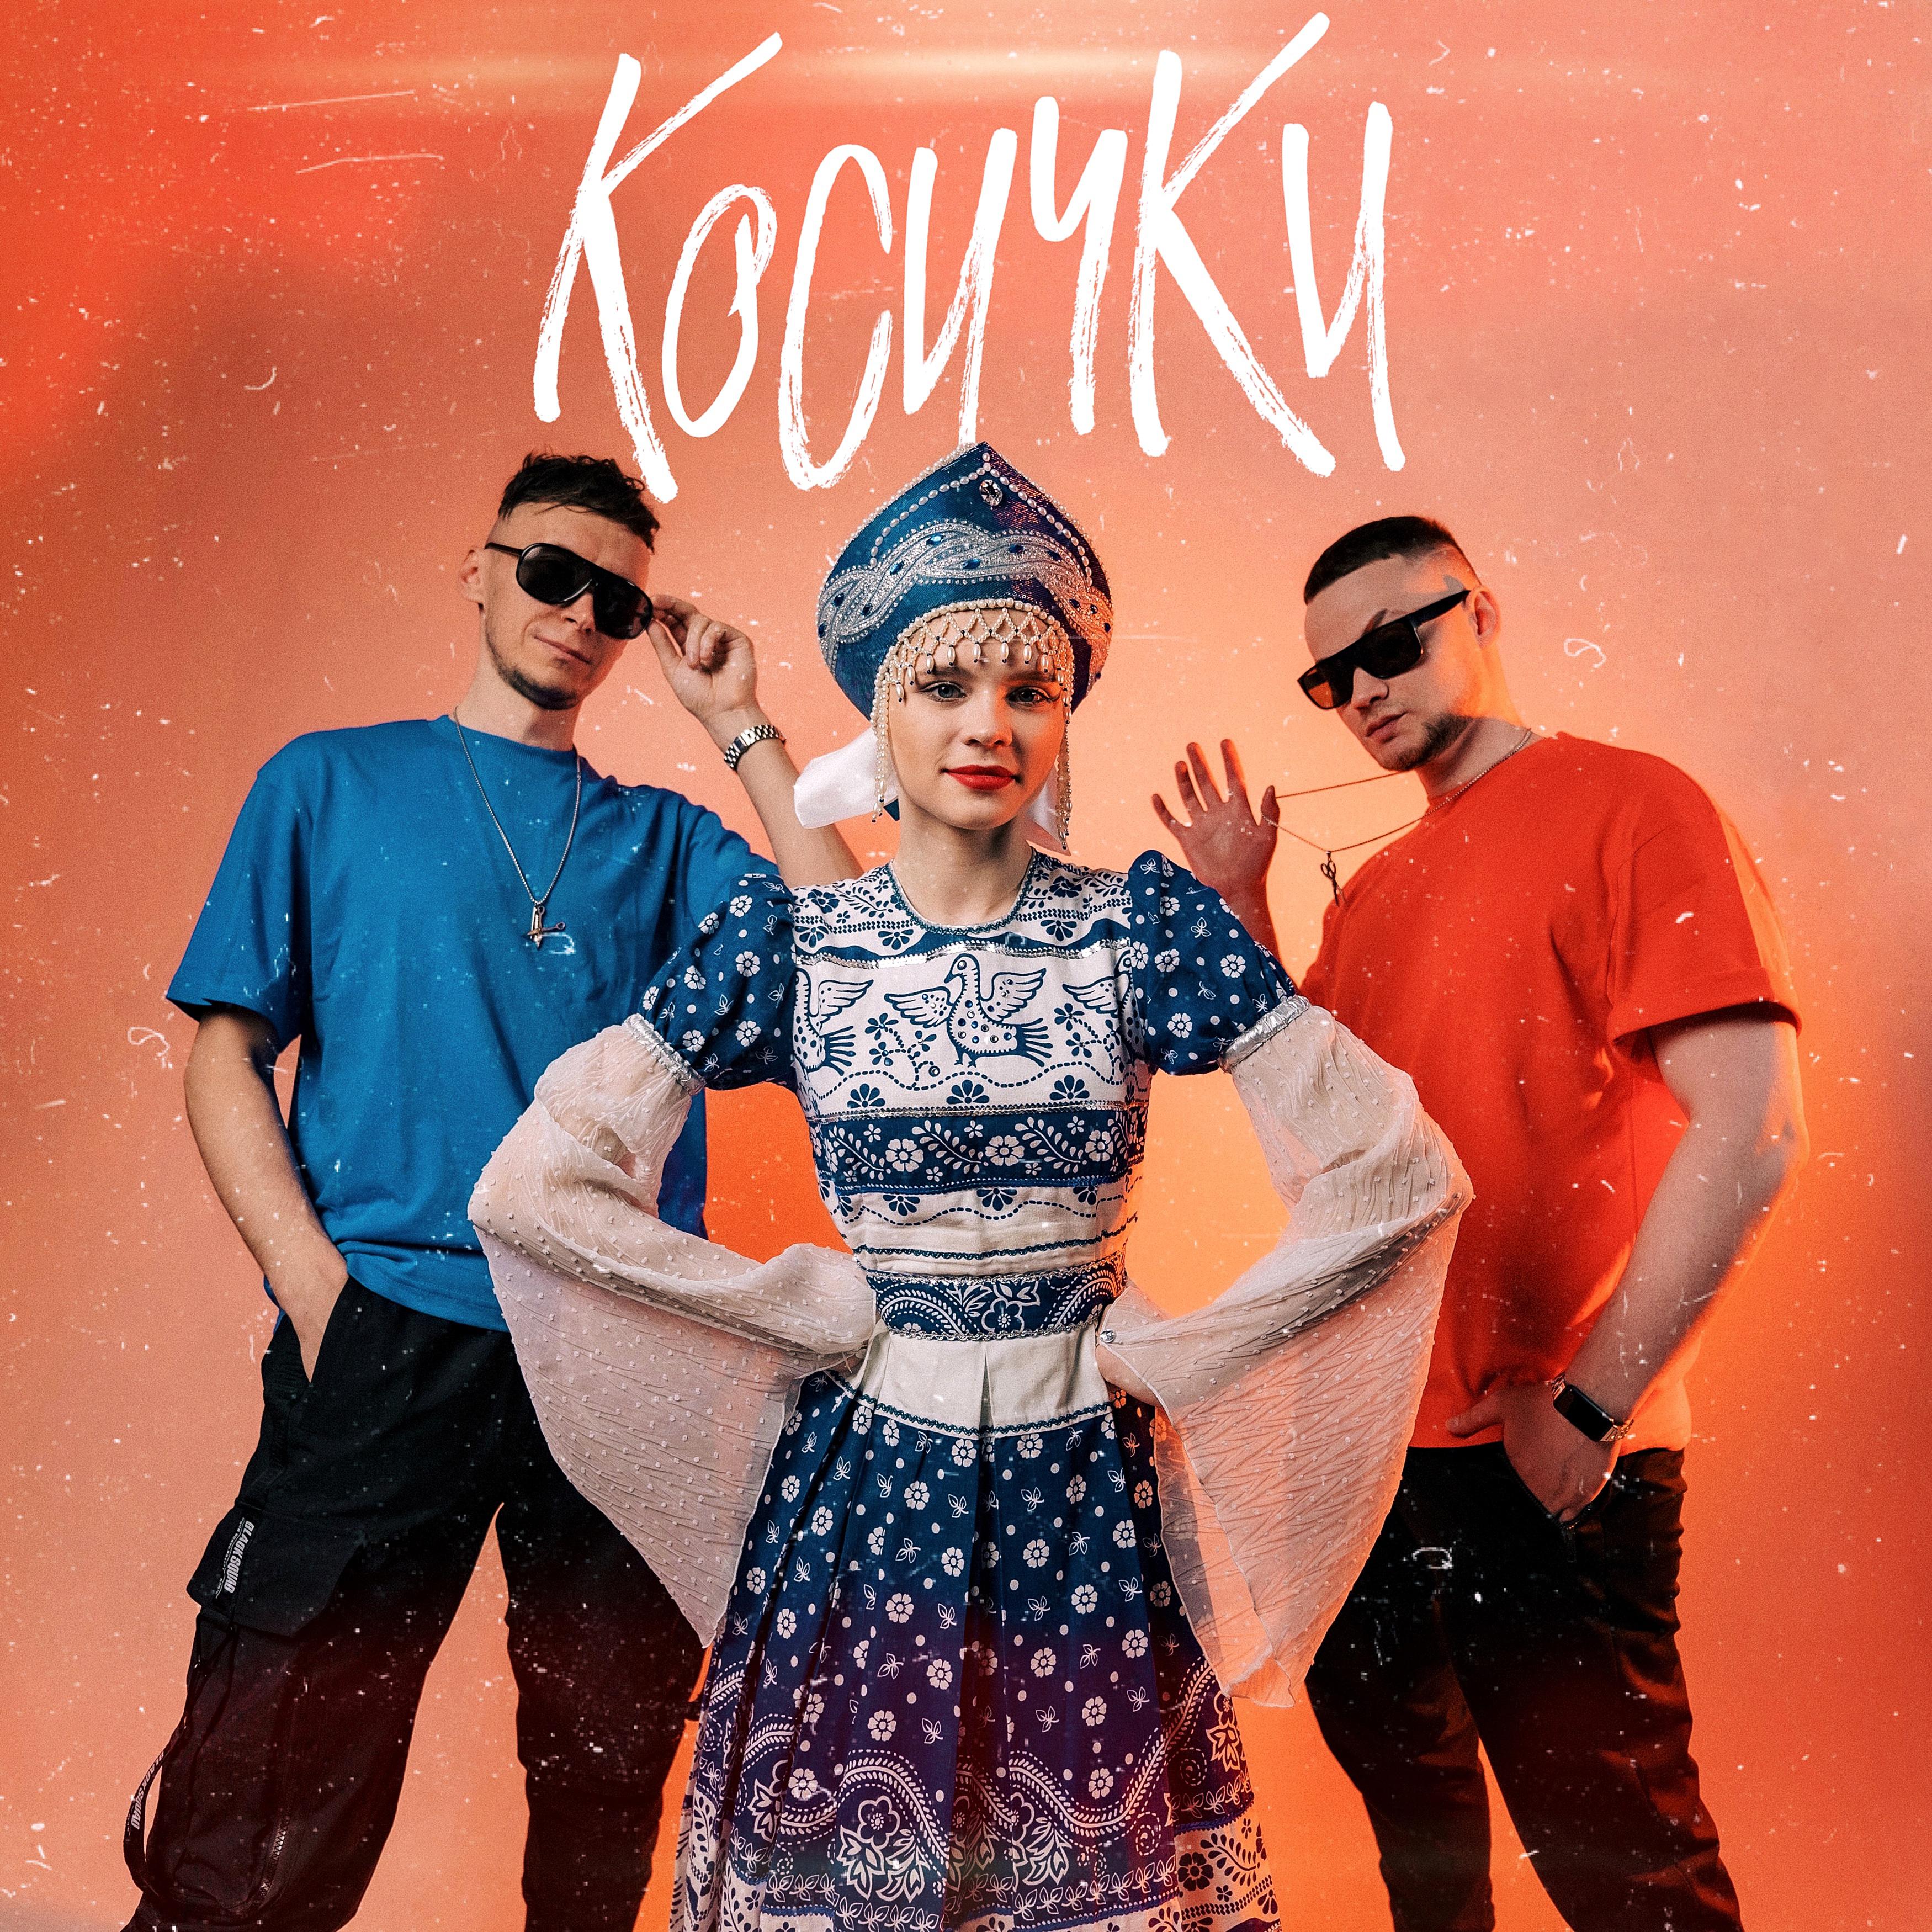 Постер альбома Косички